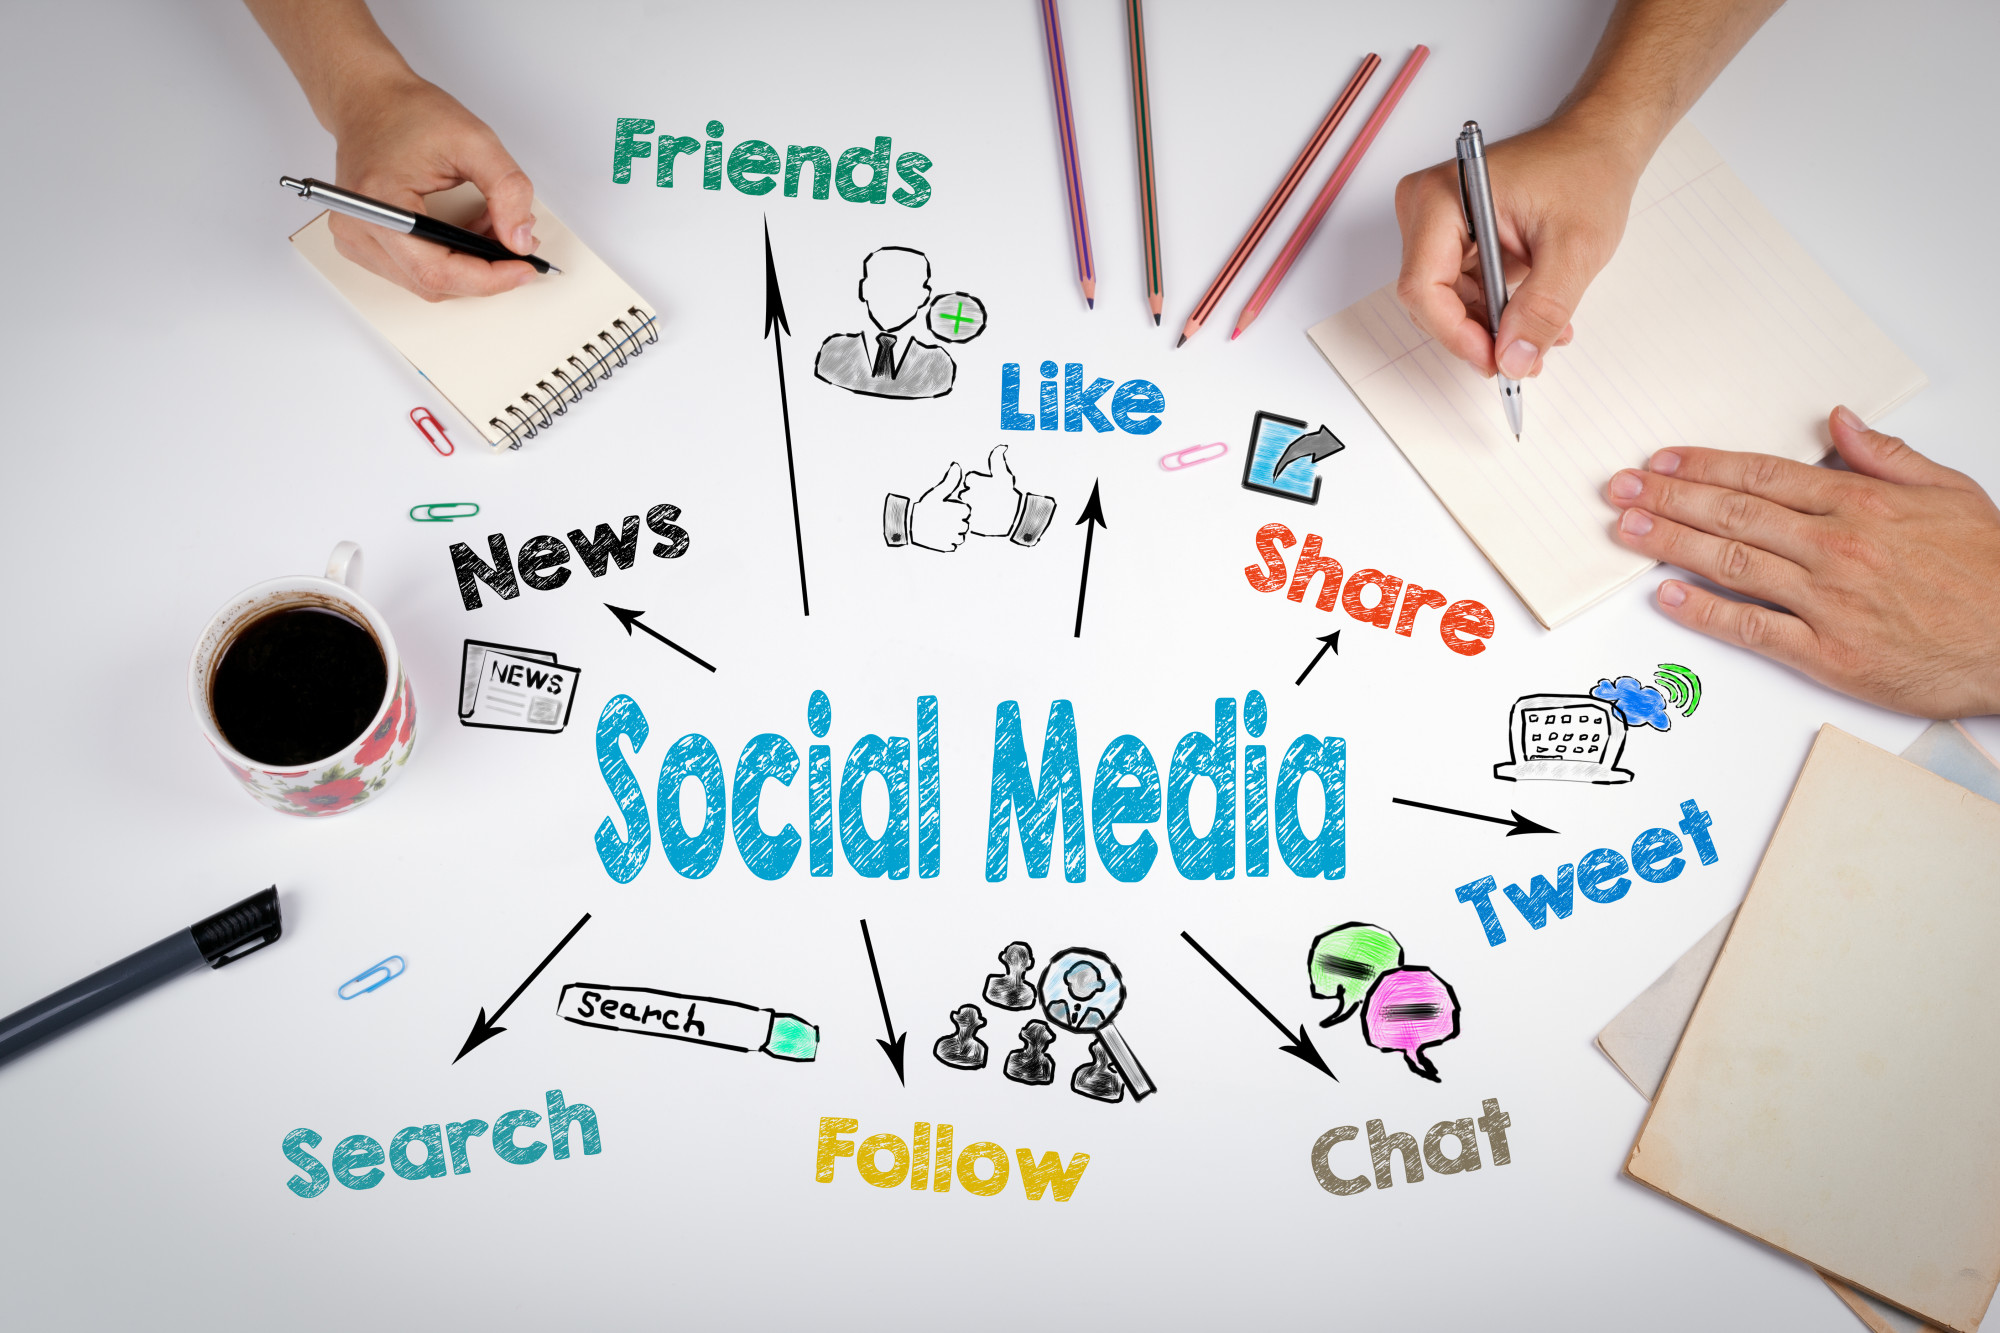 Marketing Through Social Media